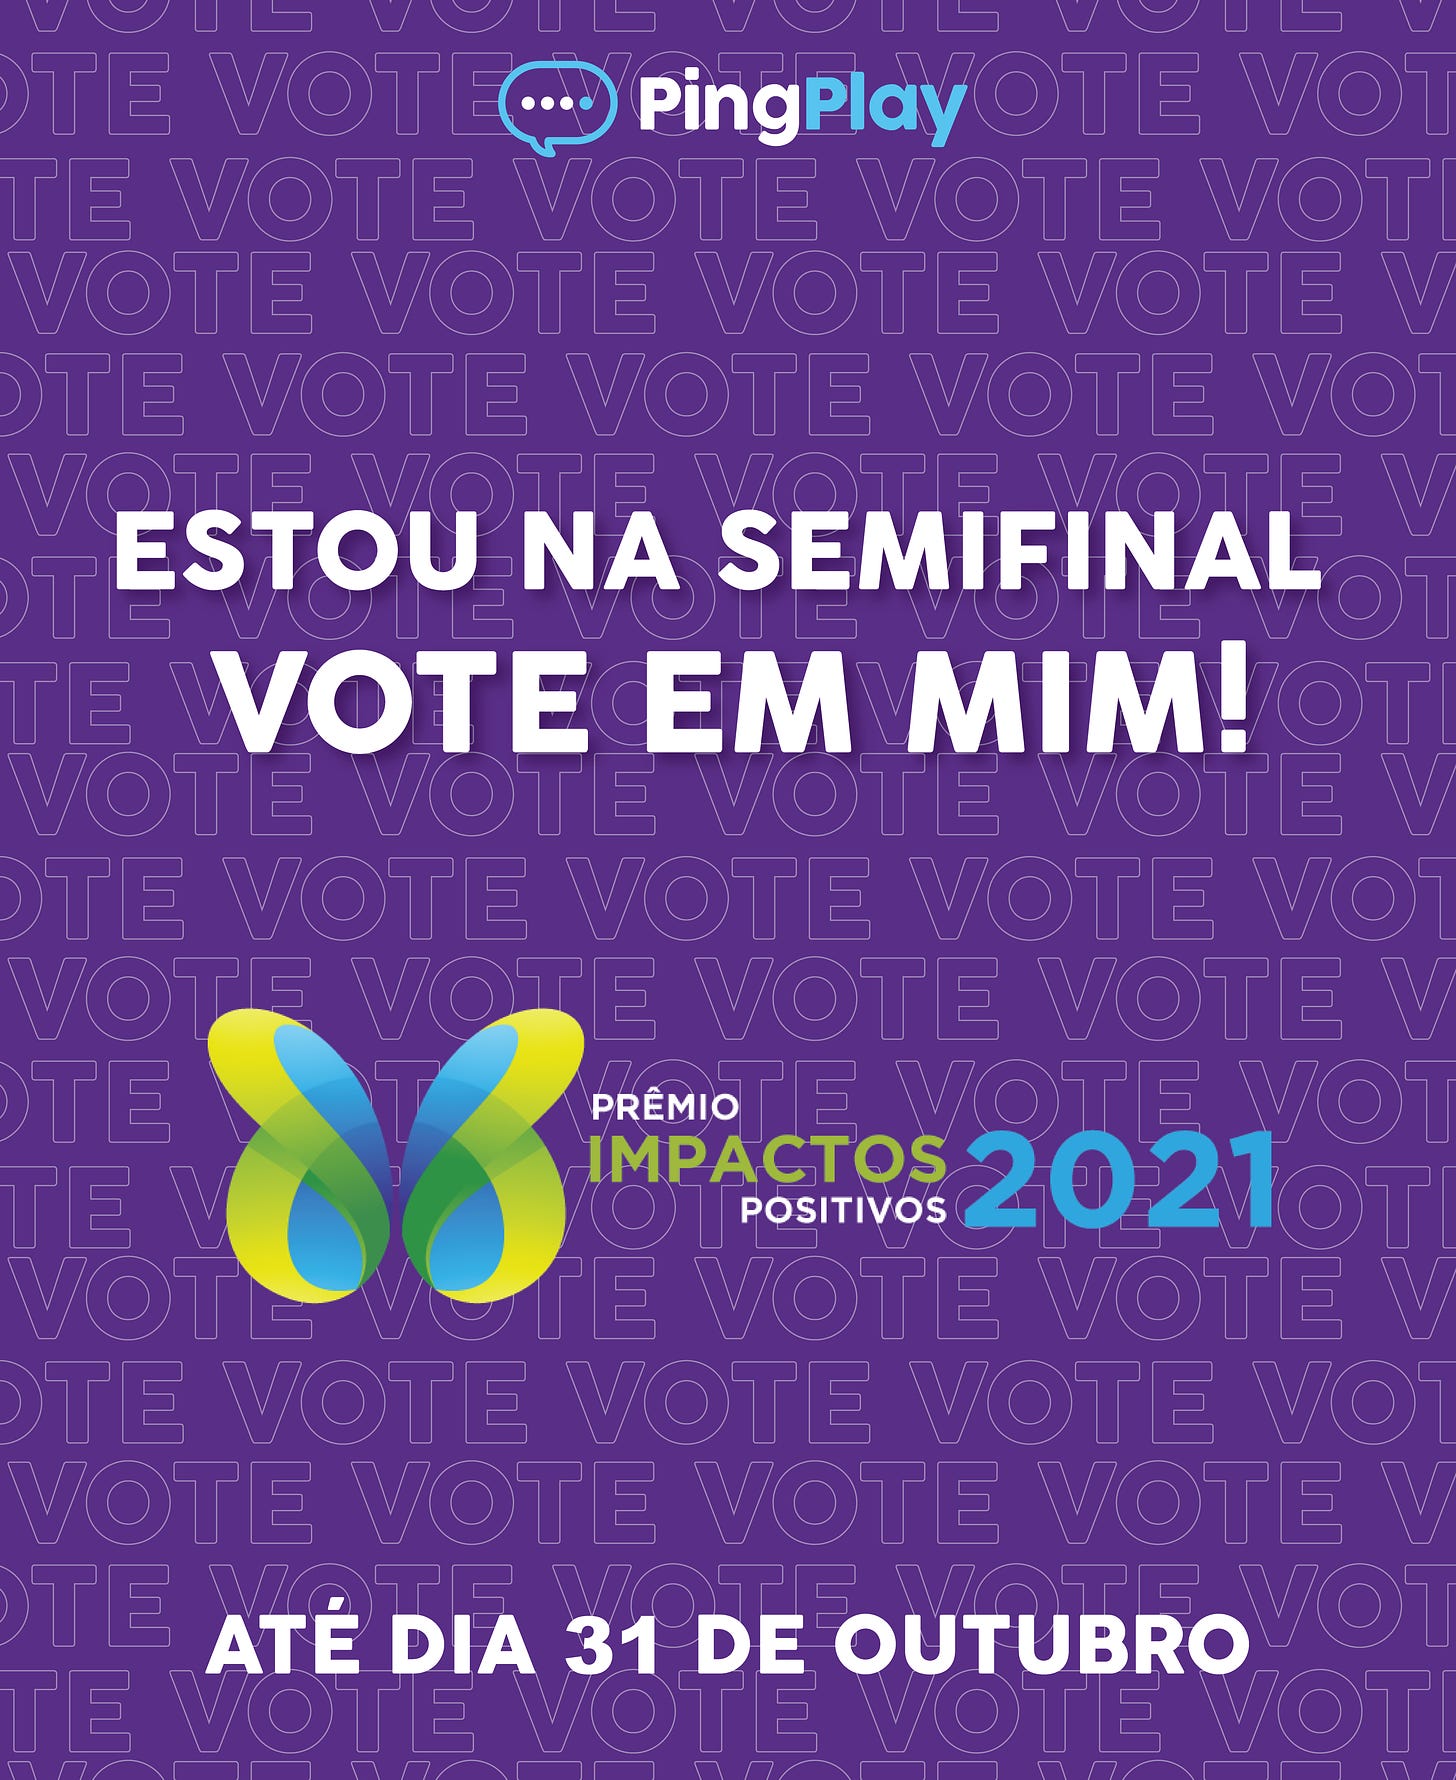 Imagem do logo do Premio Impactos Positivos 2021 e abaixo lê-se: Vote em mim é só até amanhã